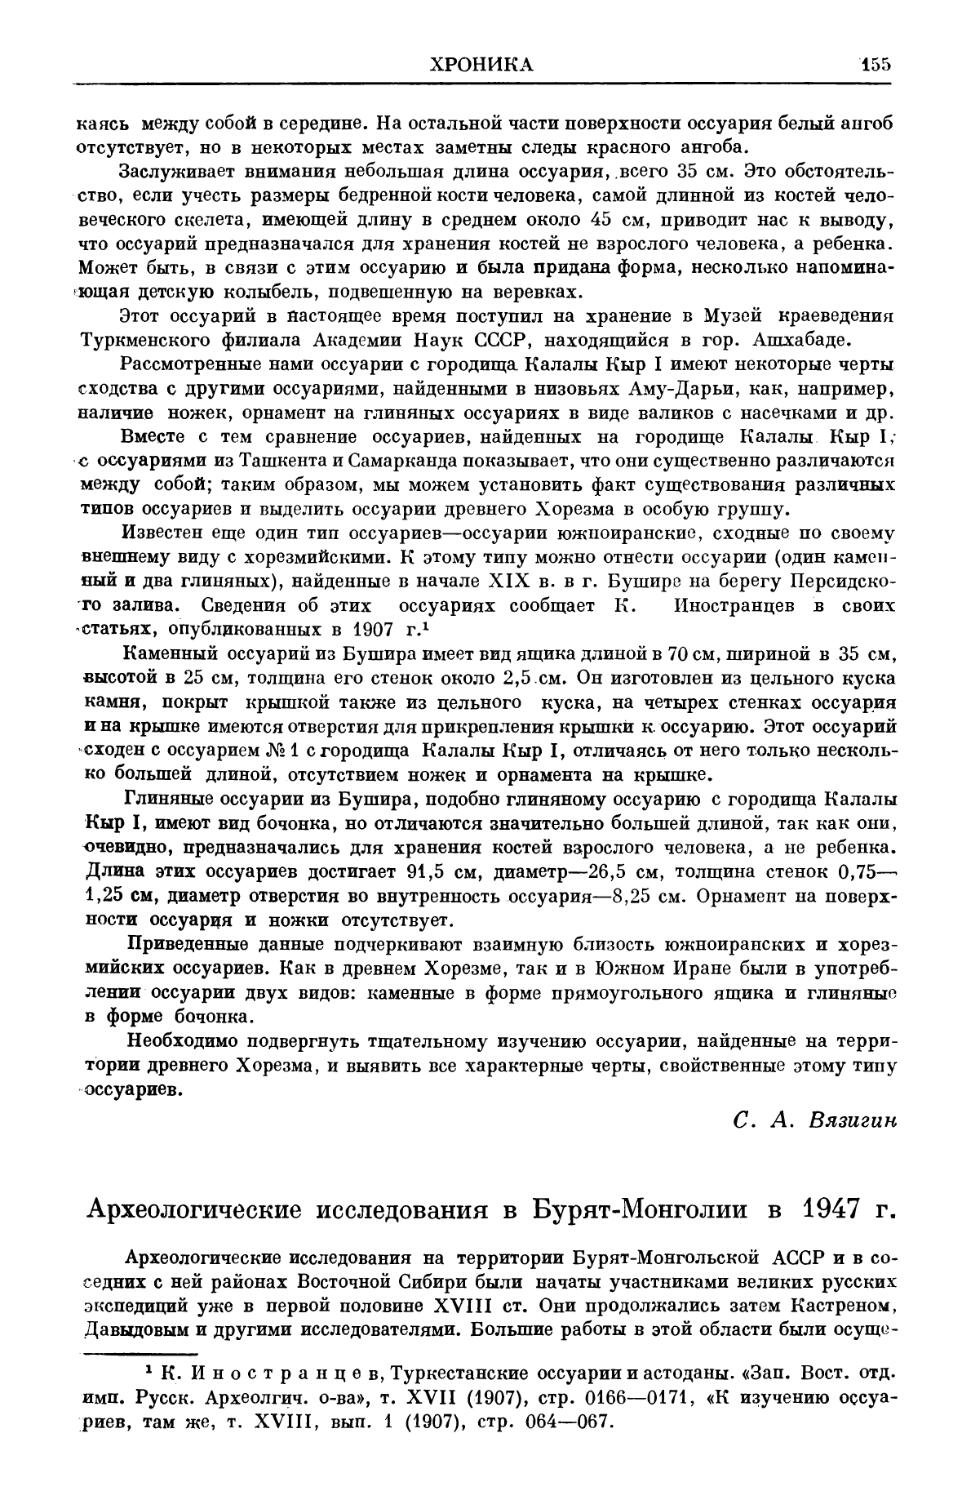 A. П. Окладников. Археологические исследования в Бурят-Монголии в 1947 г